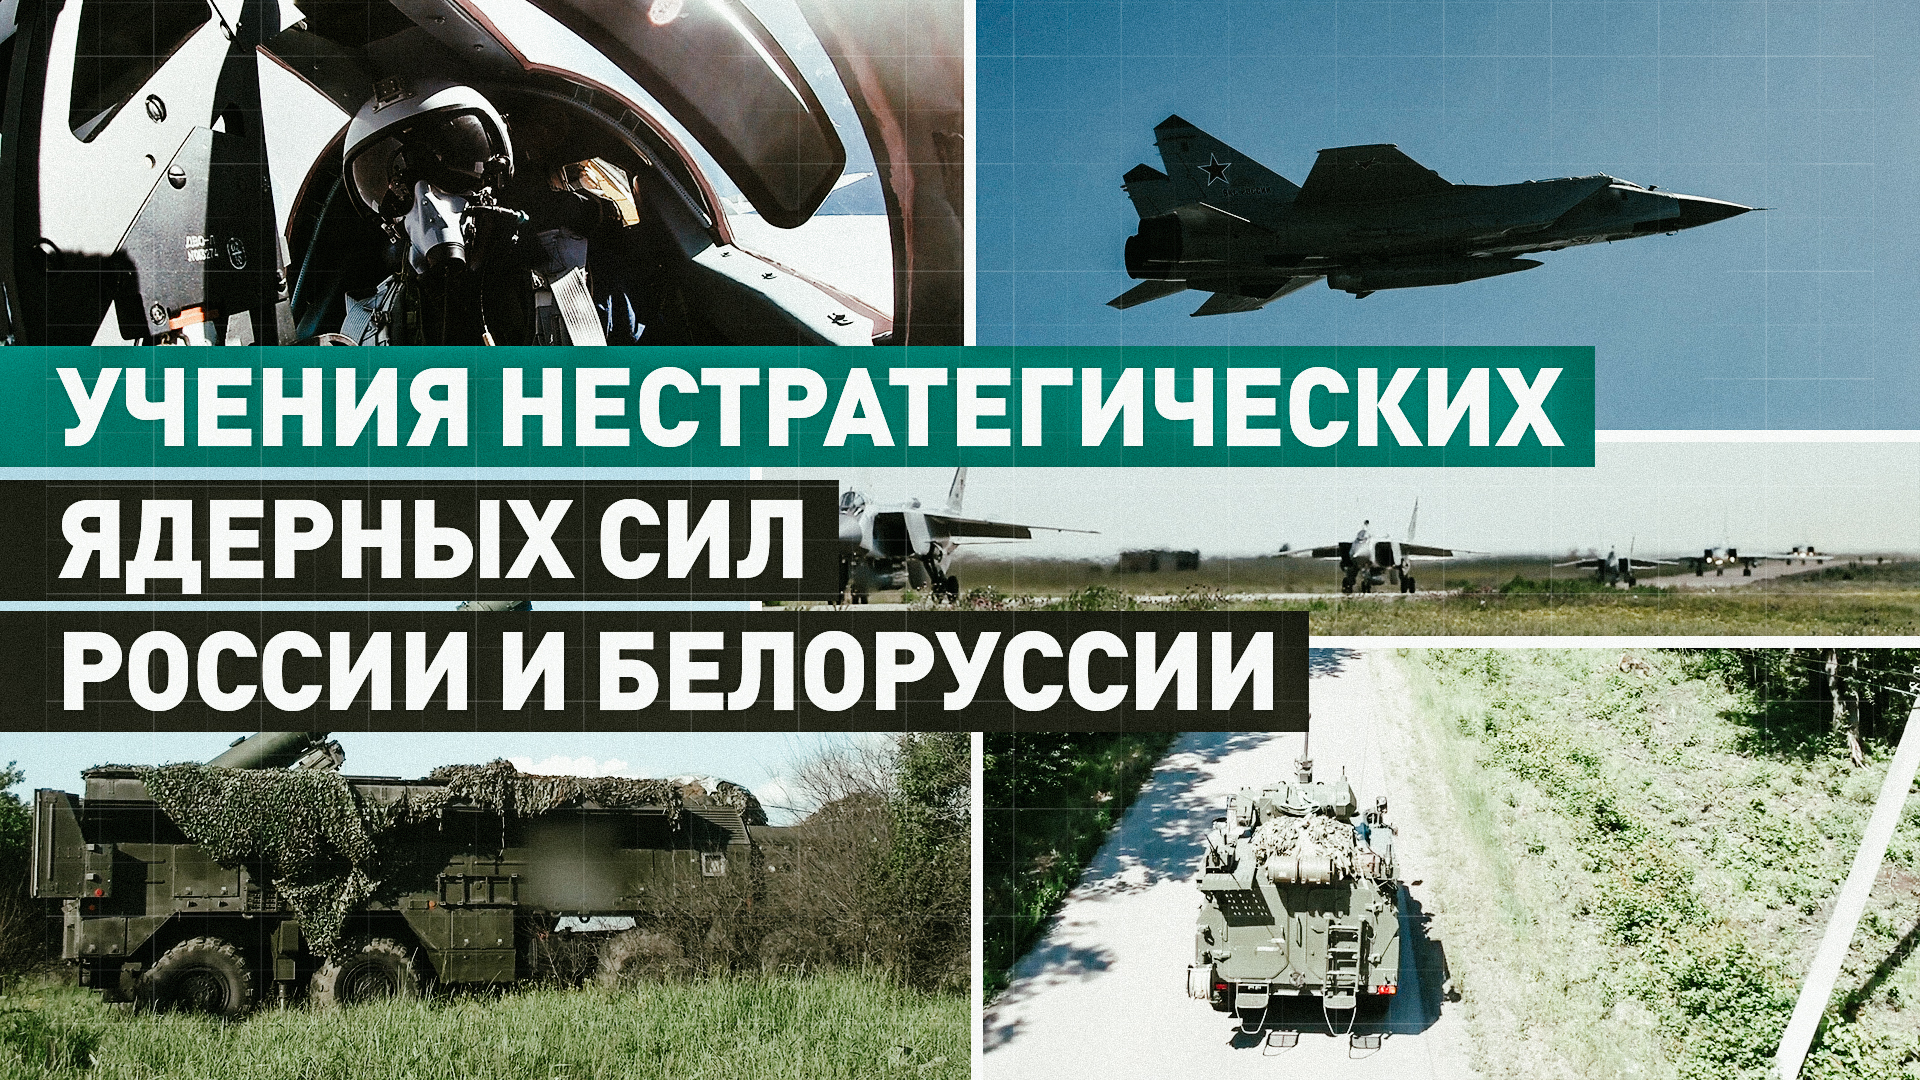 Второй этап учений нестратегических ядерных сил России и Белоруссии — видео